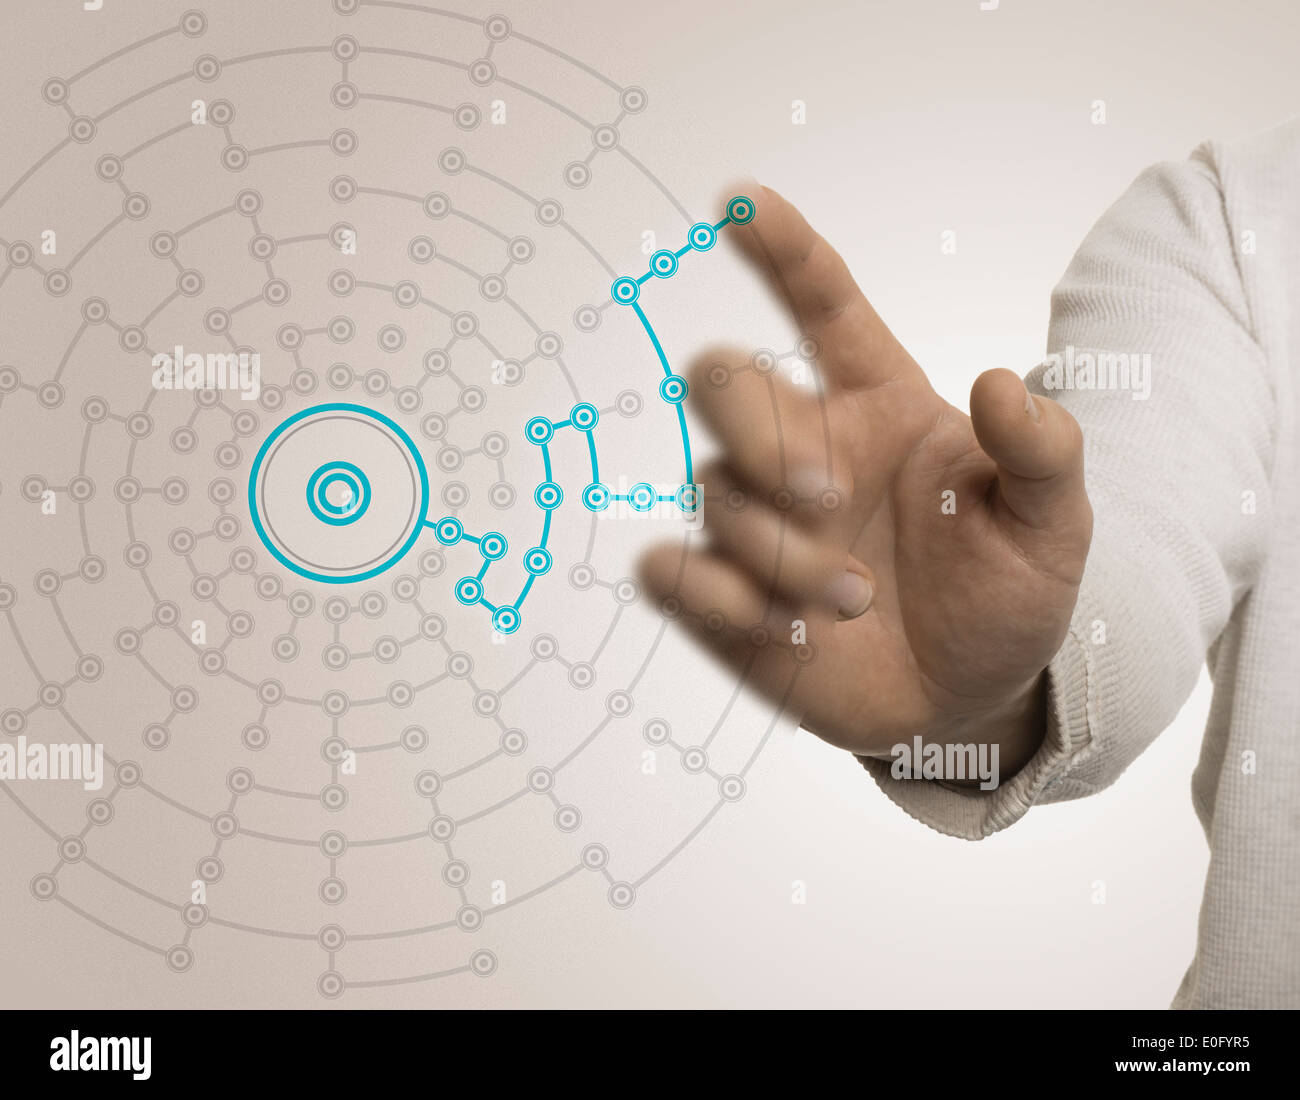 Finger, ein Netzwerk mit Blau- und Beigetönen Konzept der besten Lösung oder Vernetzung. Stockfoto